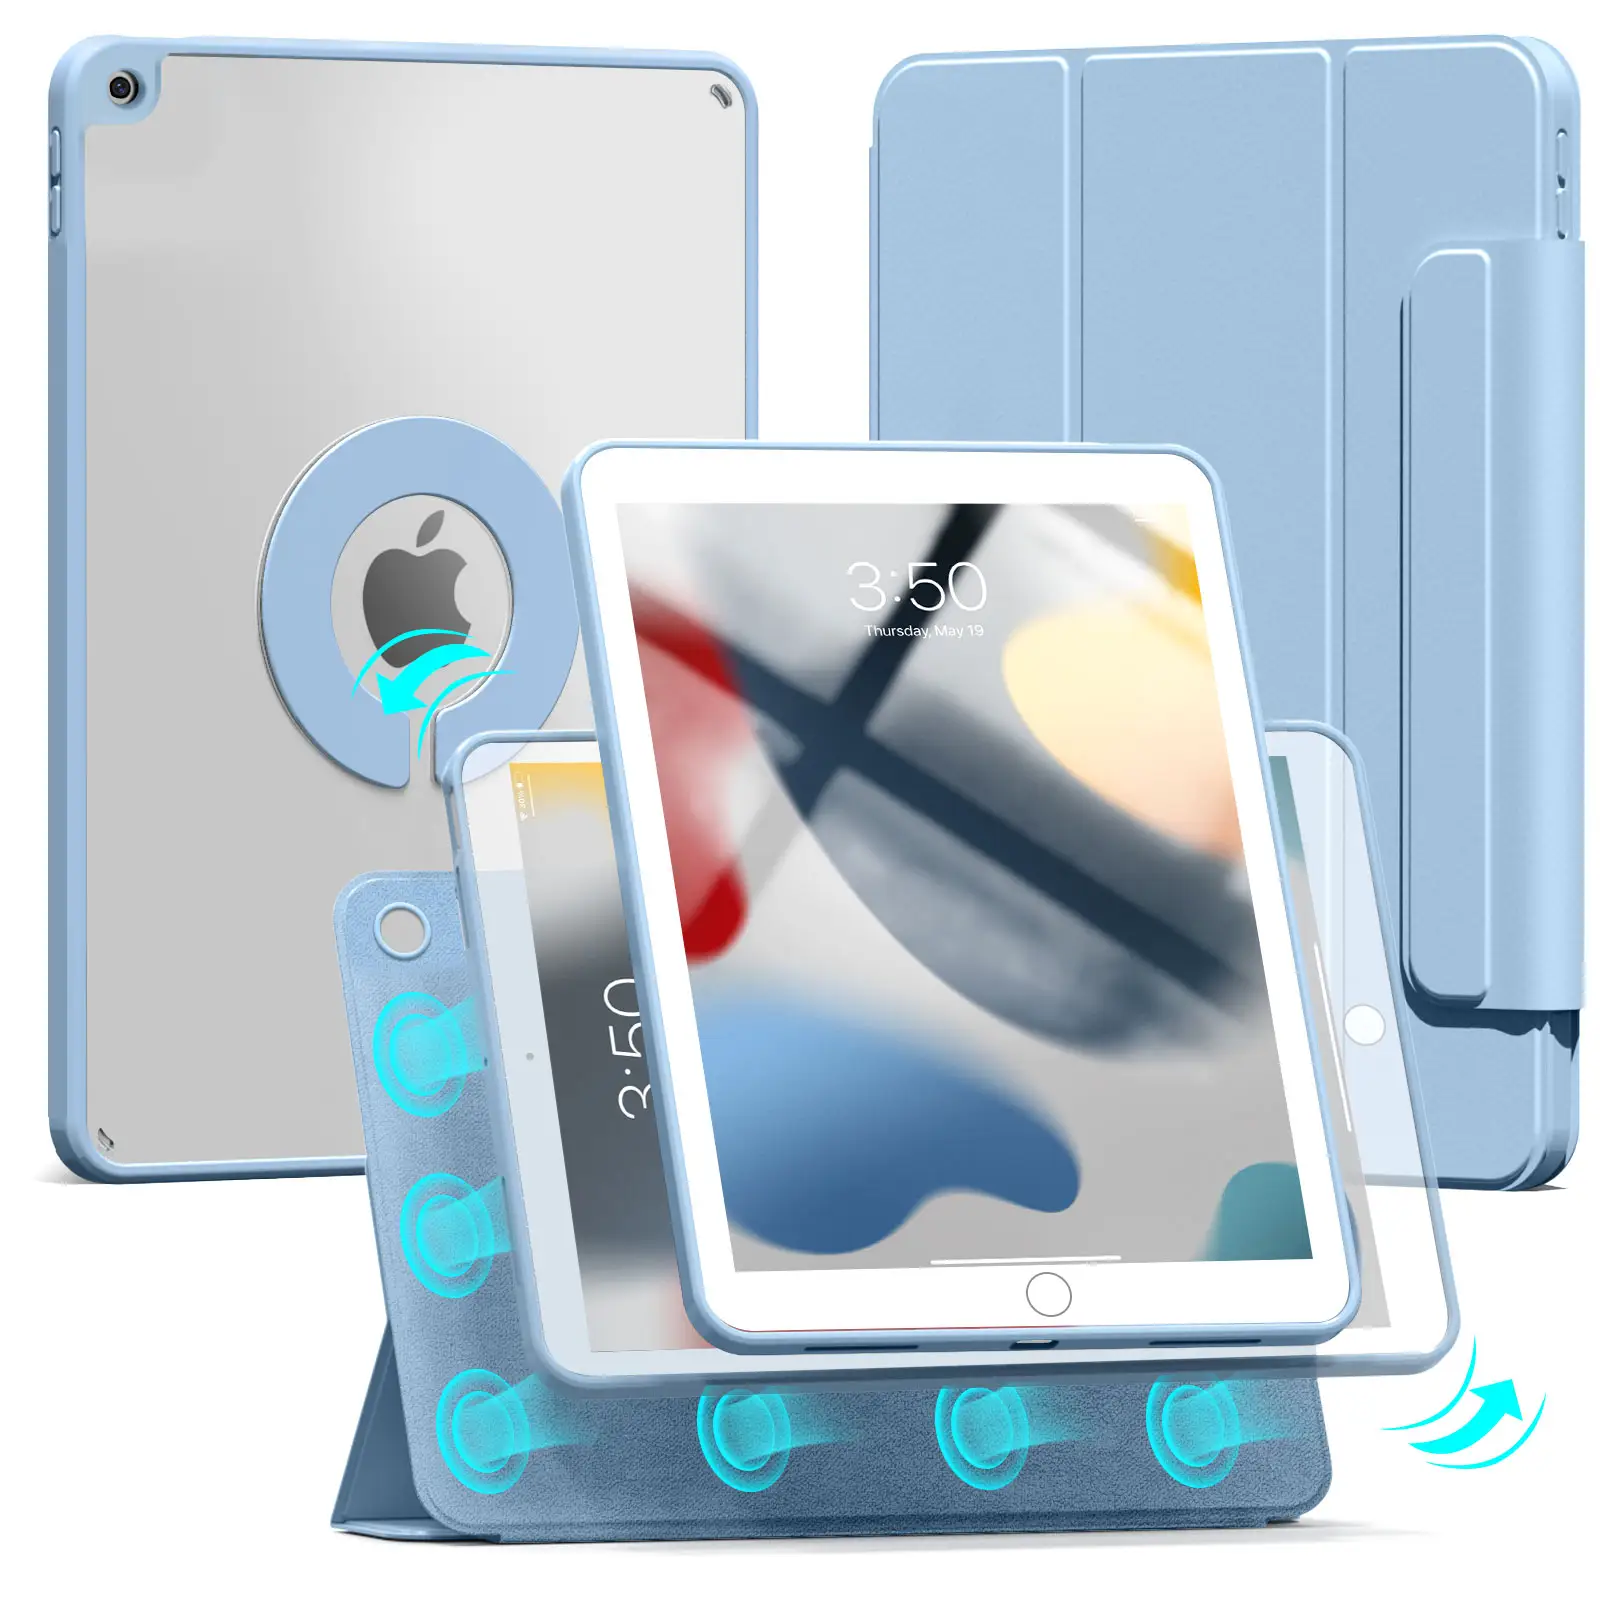 Roterende Kickstand Design Pc Tablet Ipad Case Met Potloodhouder Opvouwbare Standaard Schouderband Voor Ipad Air 4 Ipad Pro 11